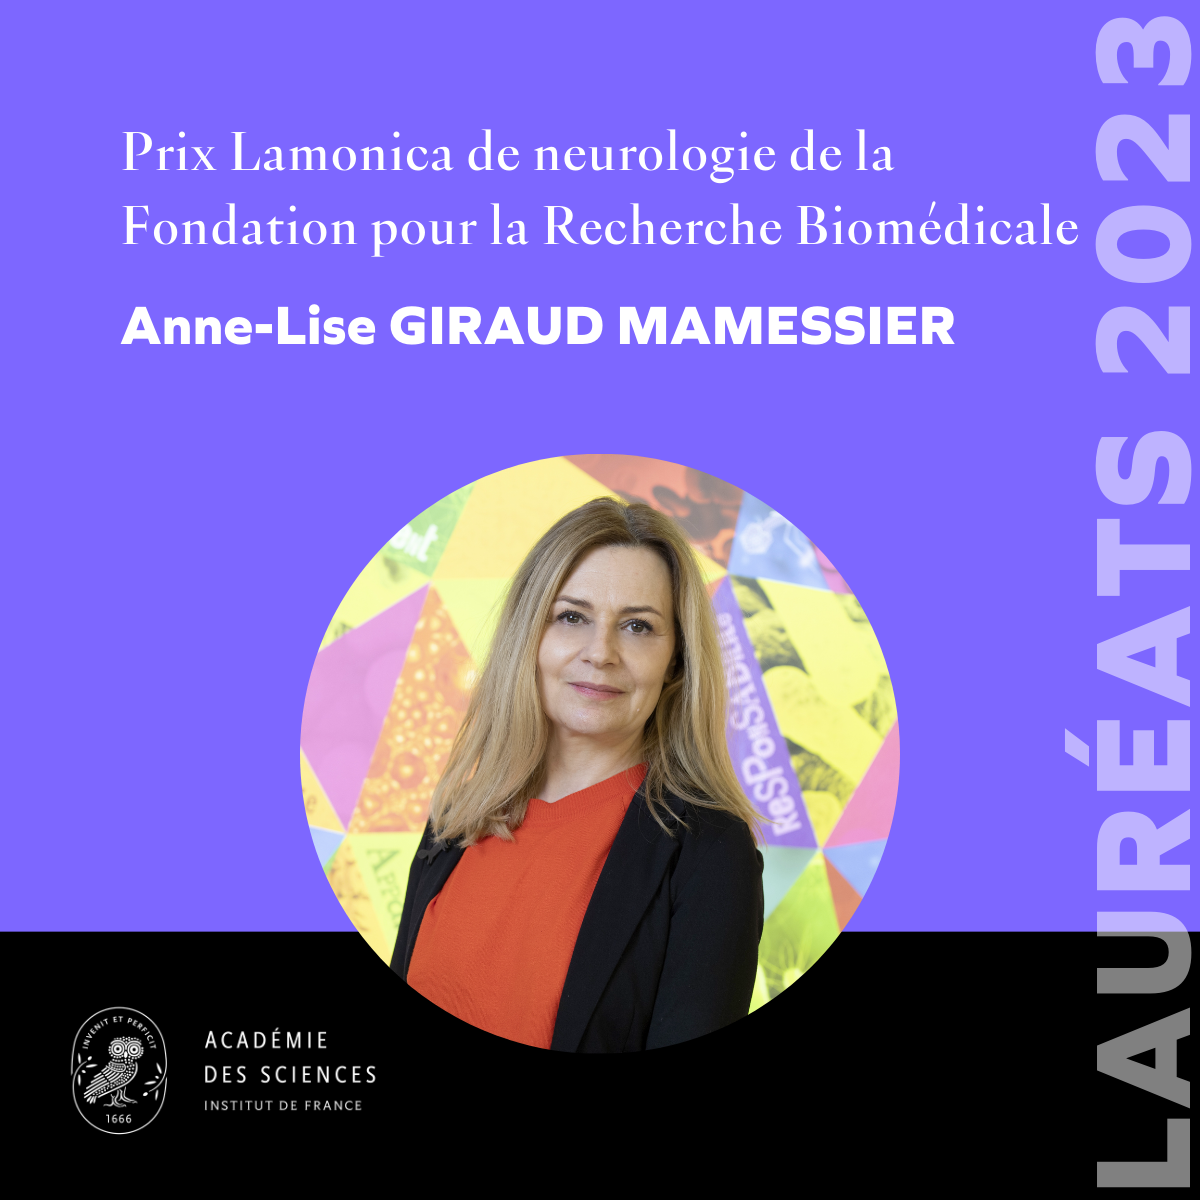 Anne-Lise GIRAUD MAMESSIER